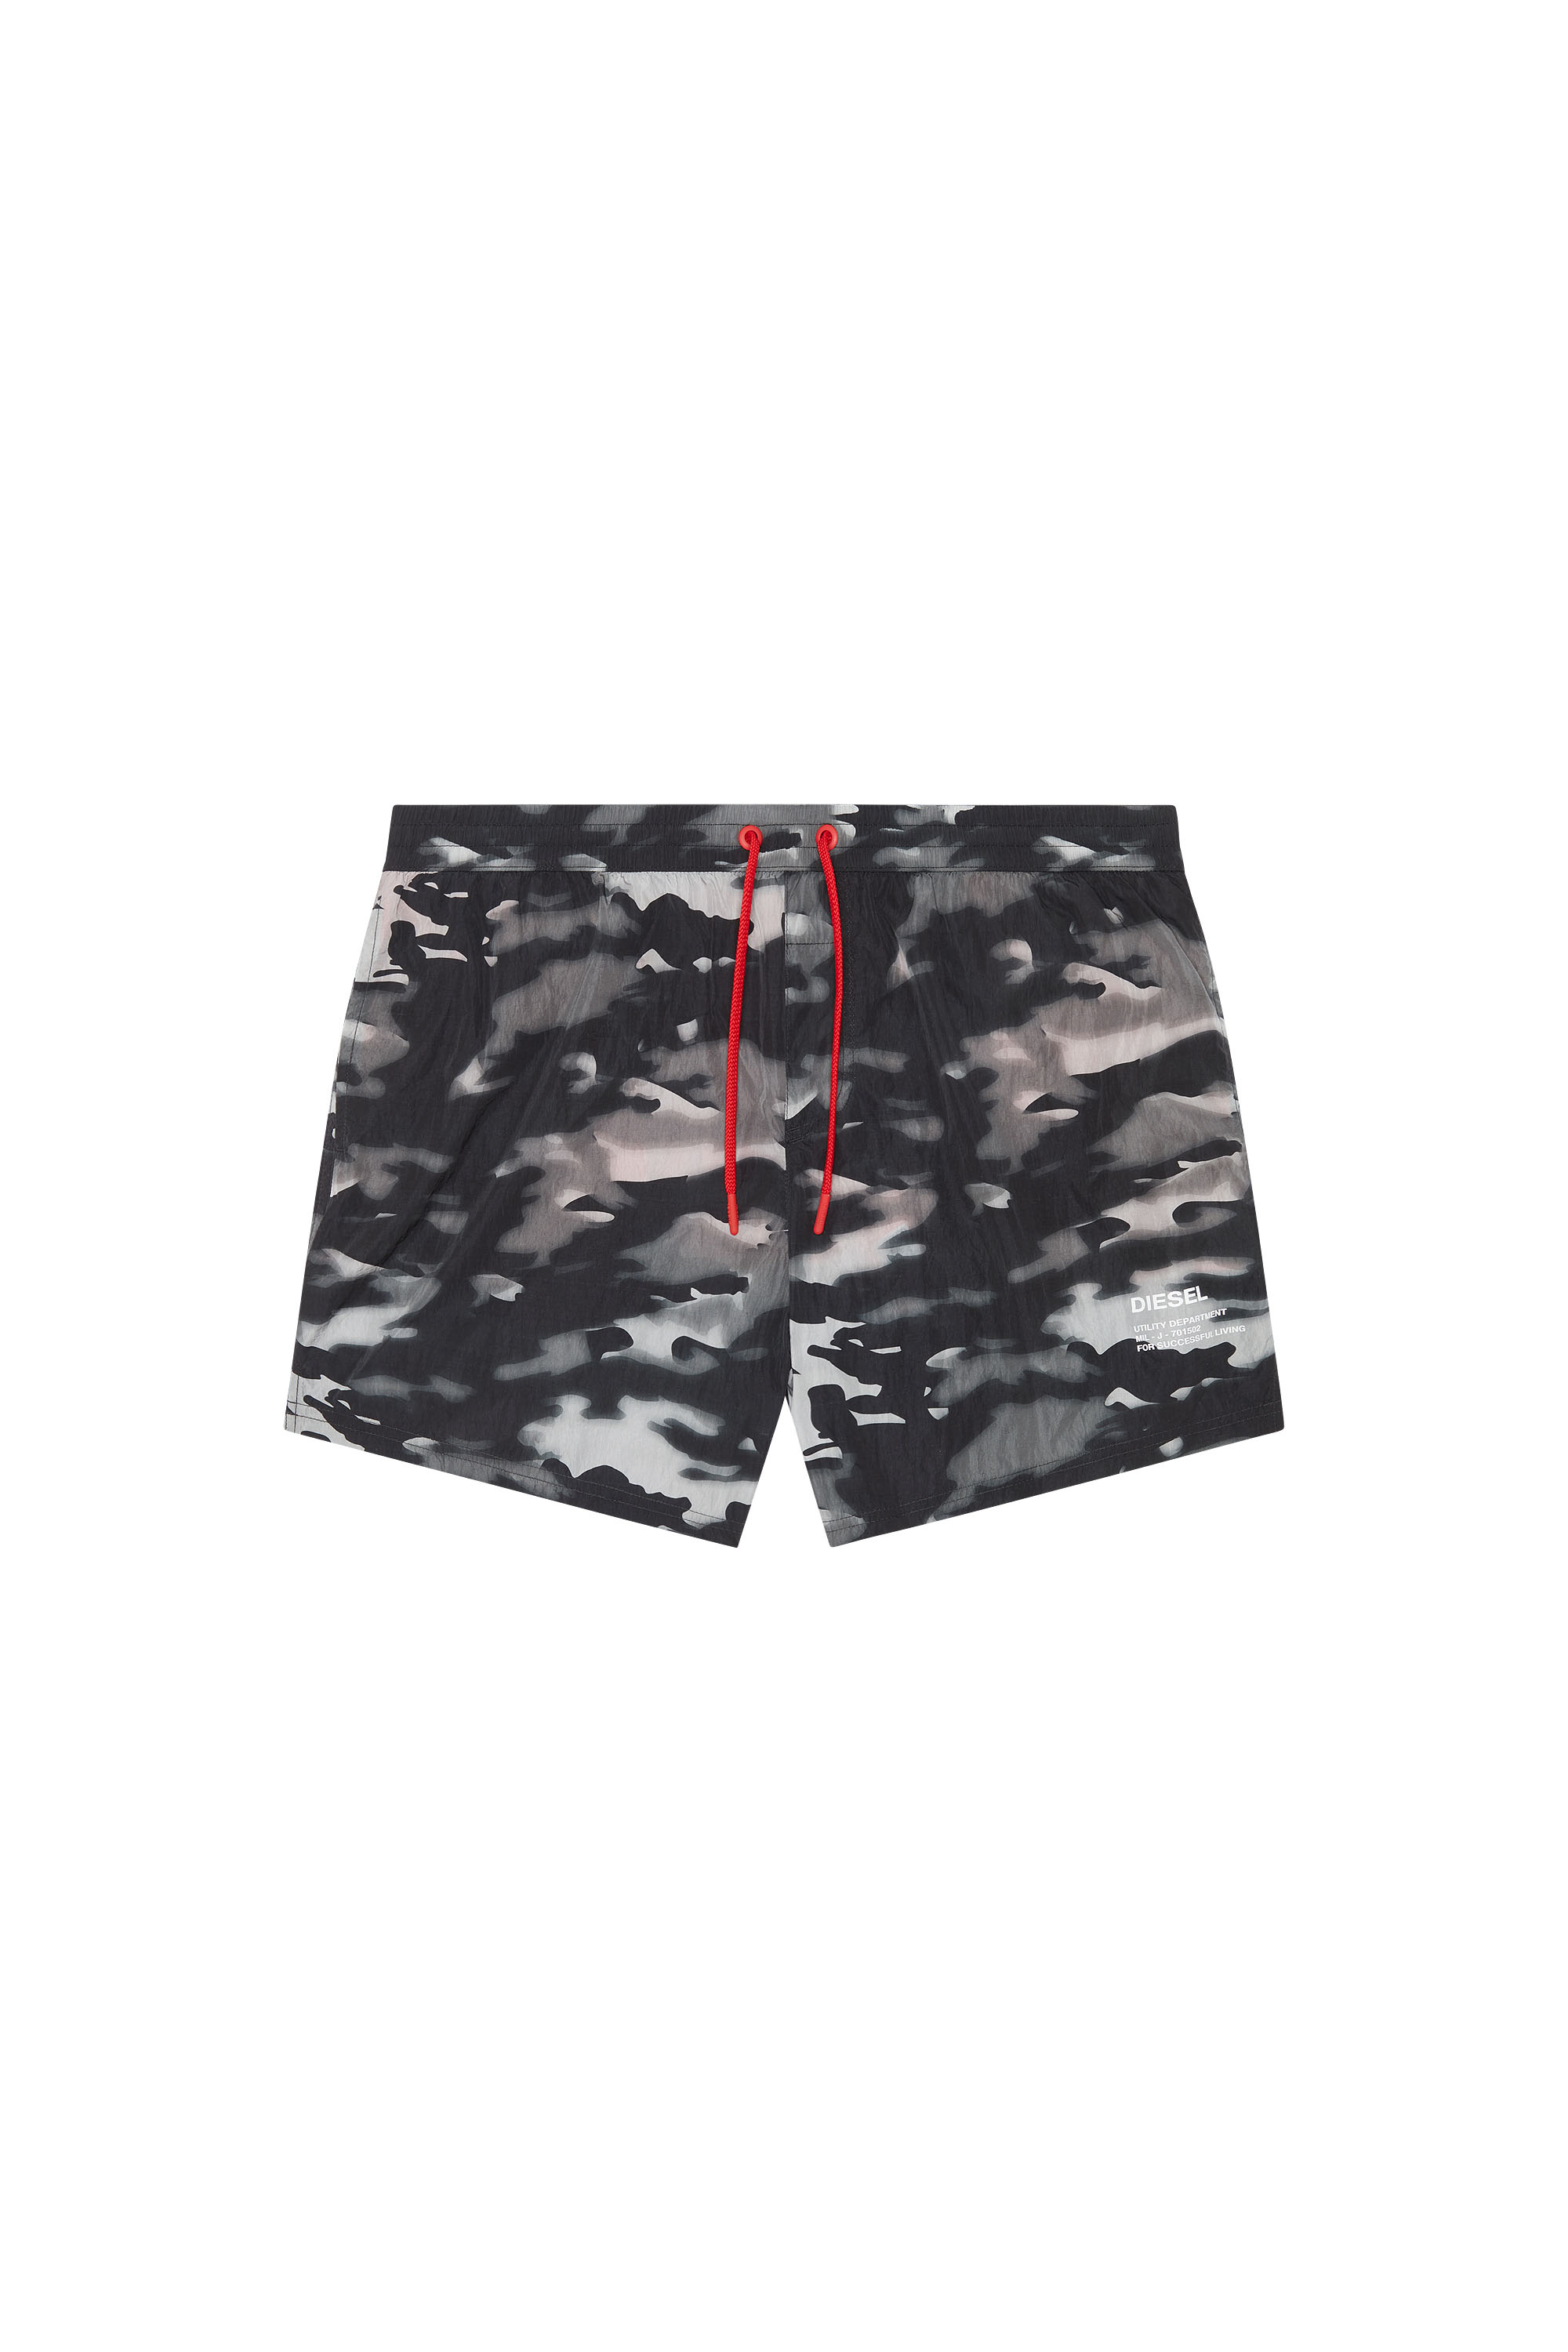 Diesel - Mittellange Bade-Shorts mit Camouflage-Print - Badeshorts - Herren - Schwarz